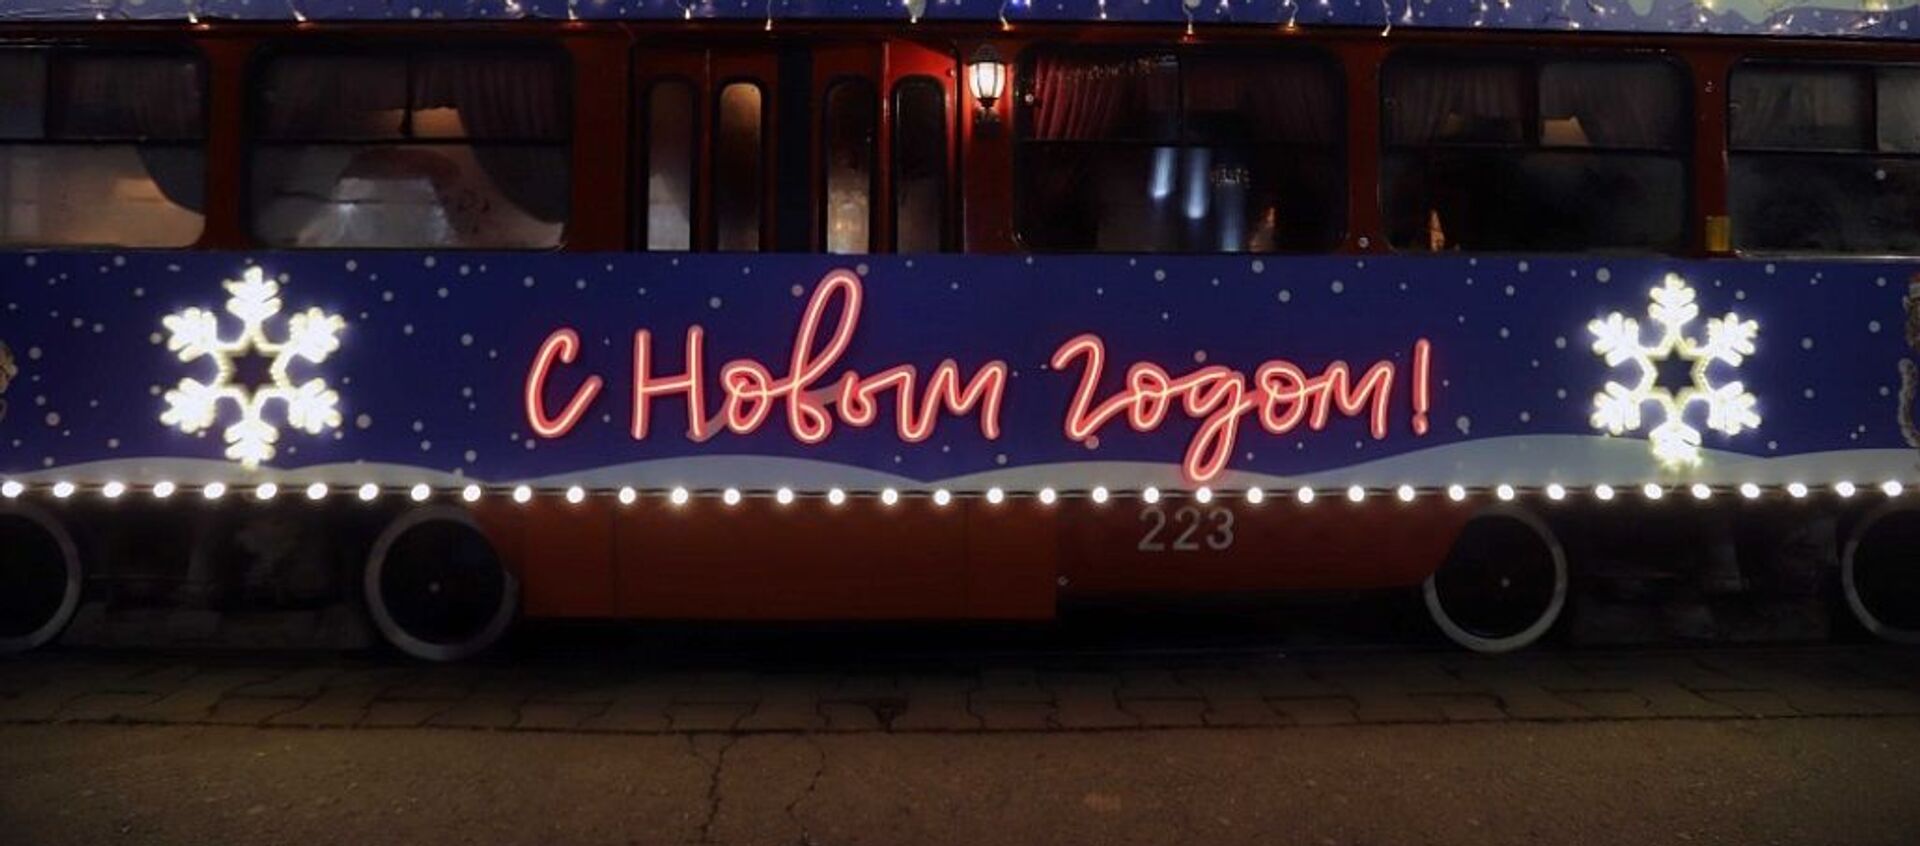 Ногазон трамвай - Sputnik Хуссар Ирыстон, 1920, 29.12.2020